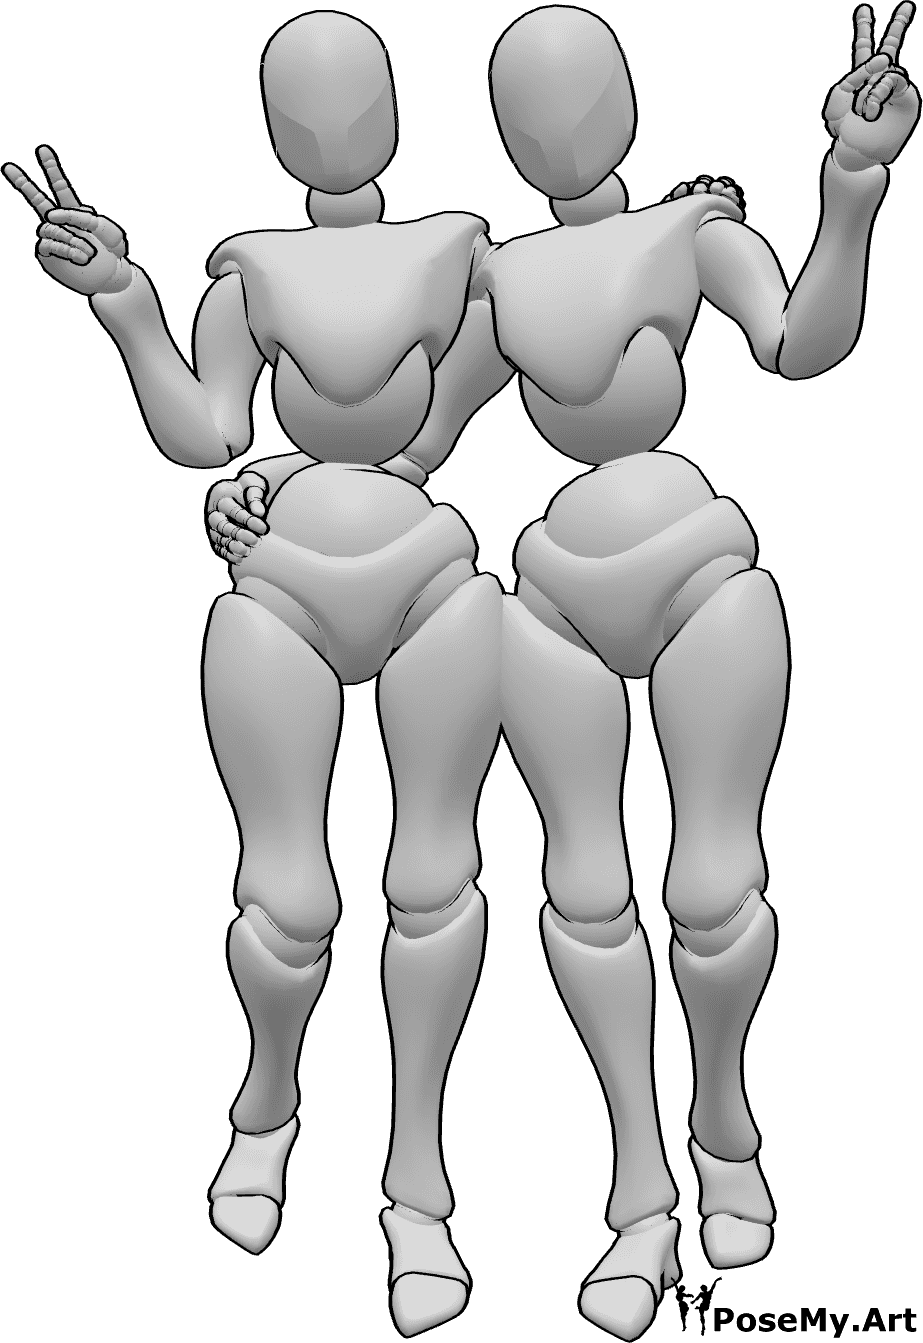 Referencia de poses- Postura femenina con el signo de la paz - Dos mujeres de pie, abrazadas y mostrando el signo de la paz